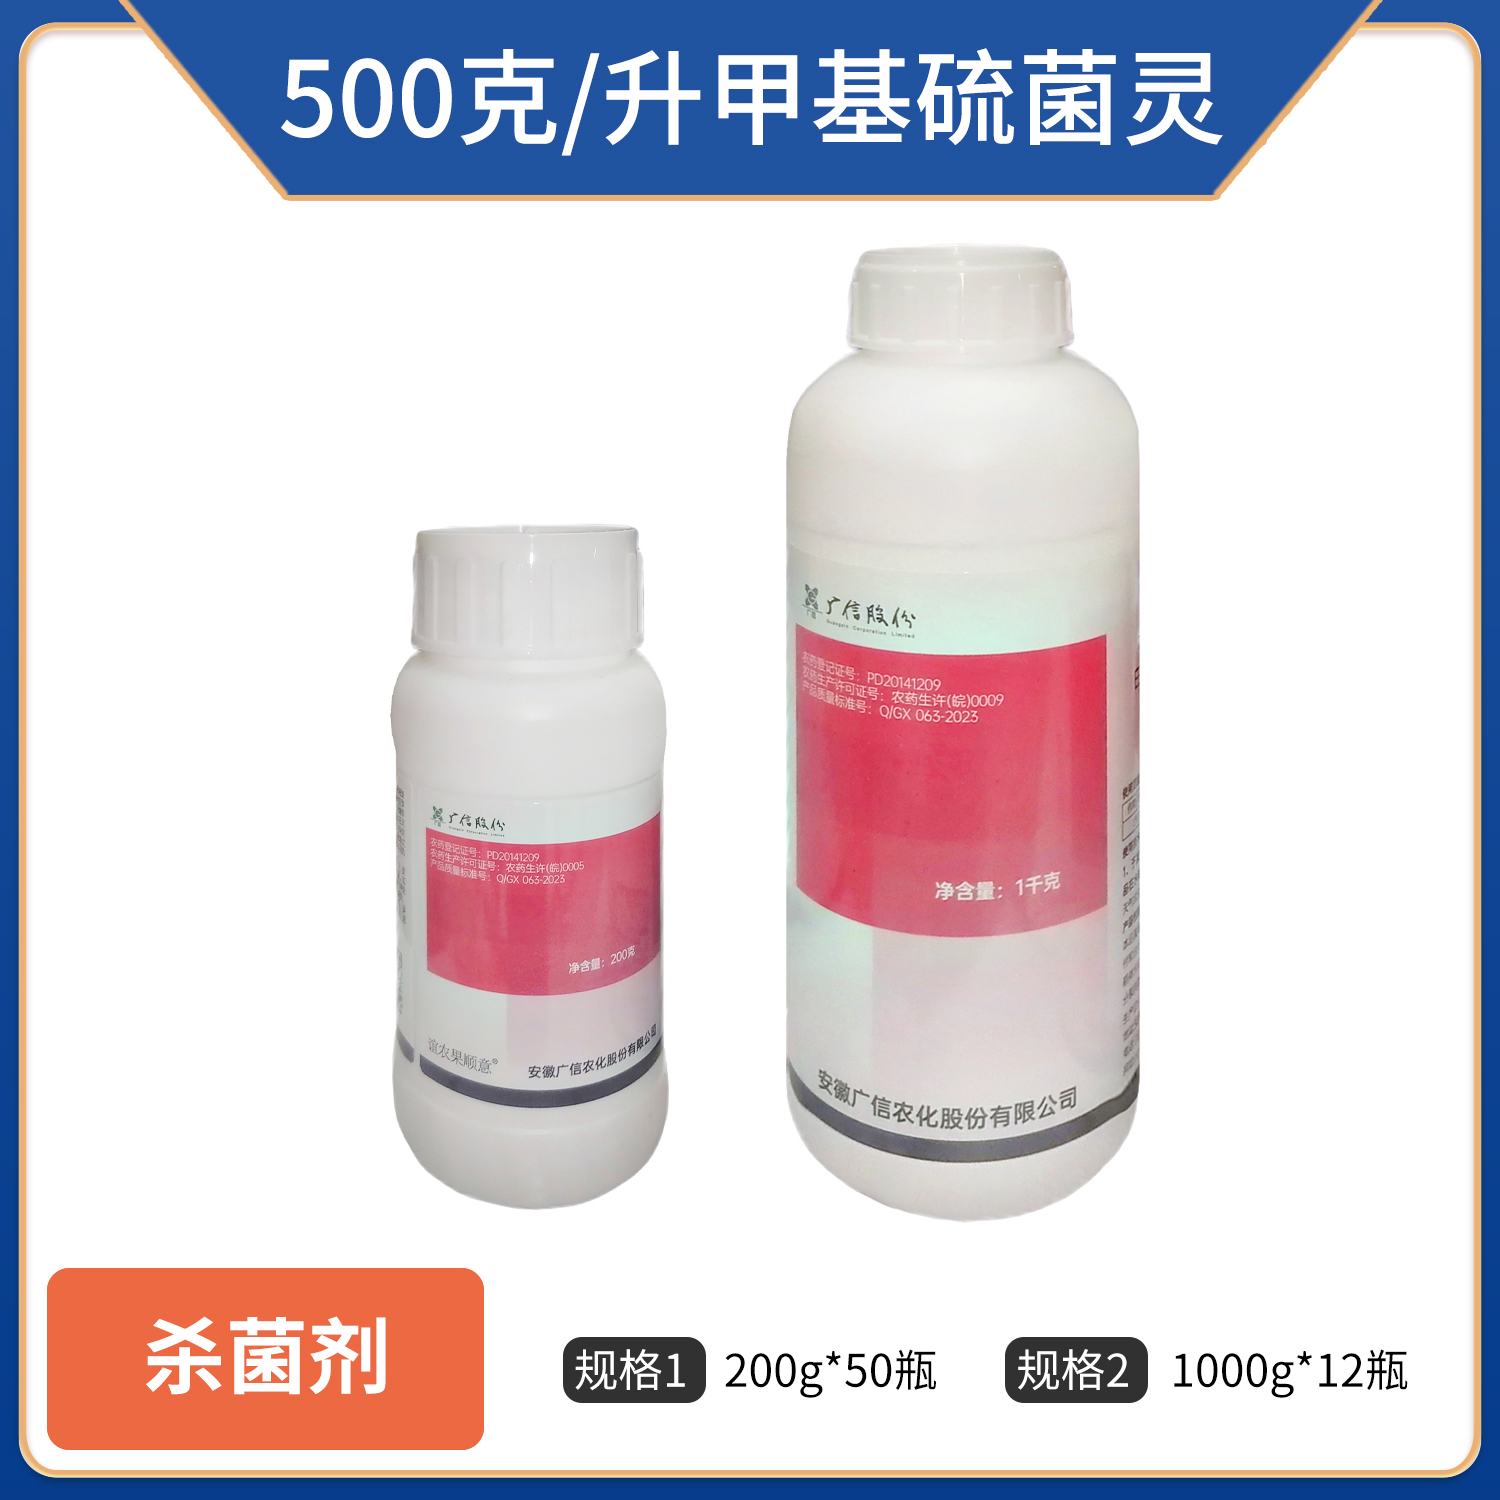 广信-500克/升甲基硫菌灵